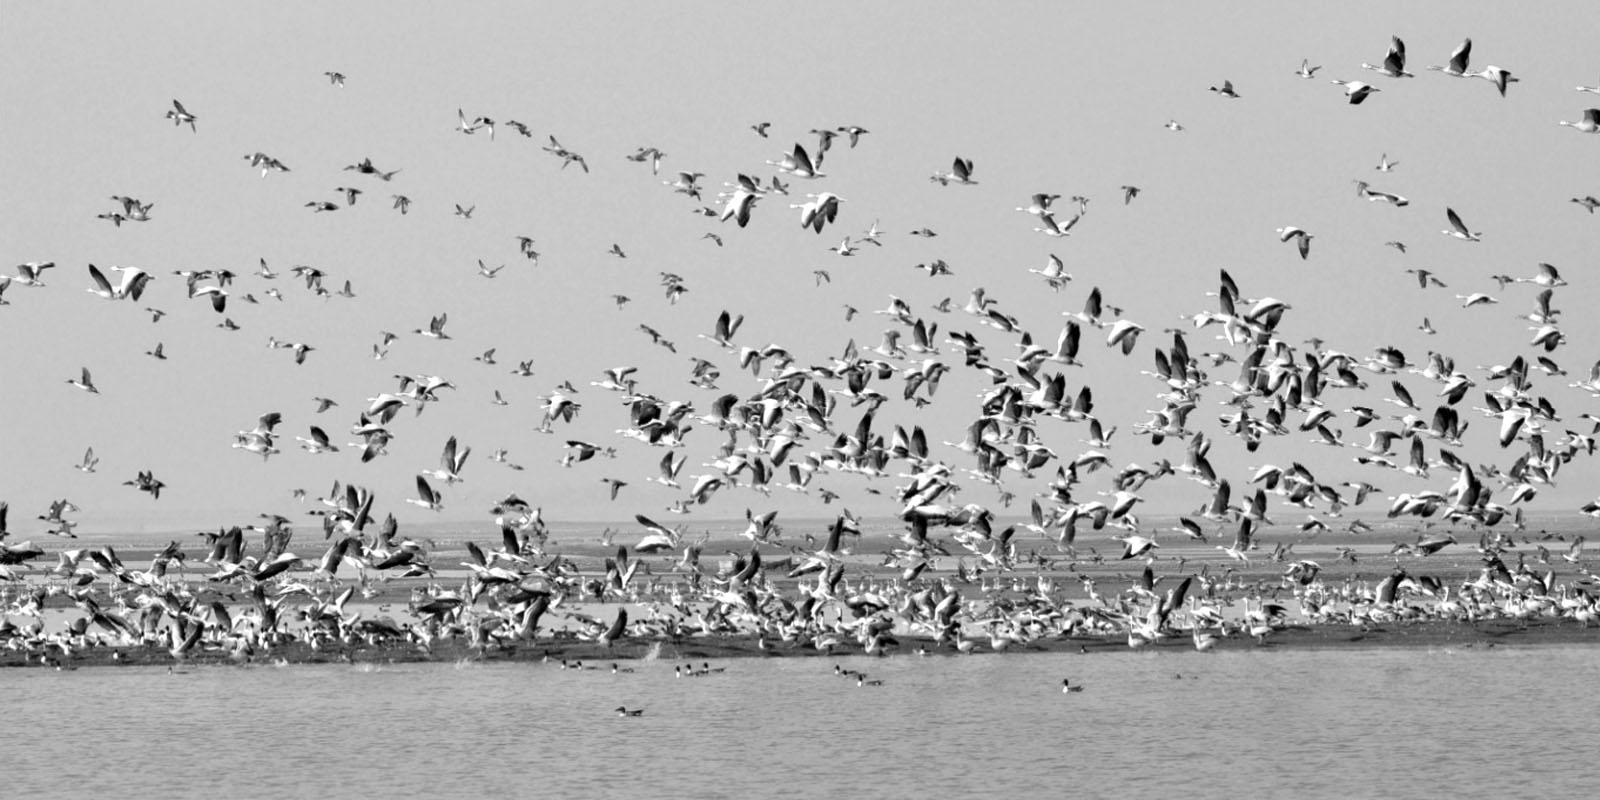 migratory bird deaths in pong dam wetlands